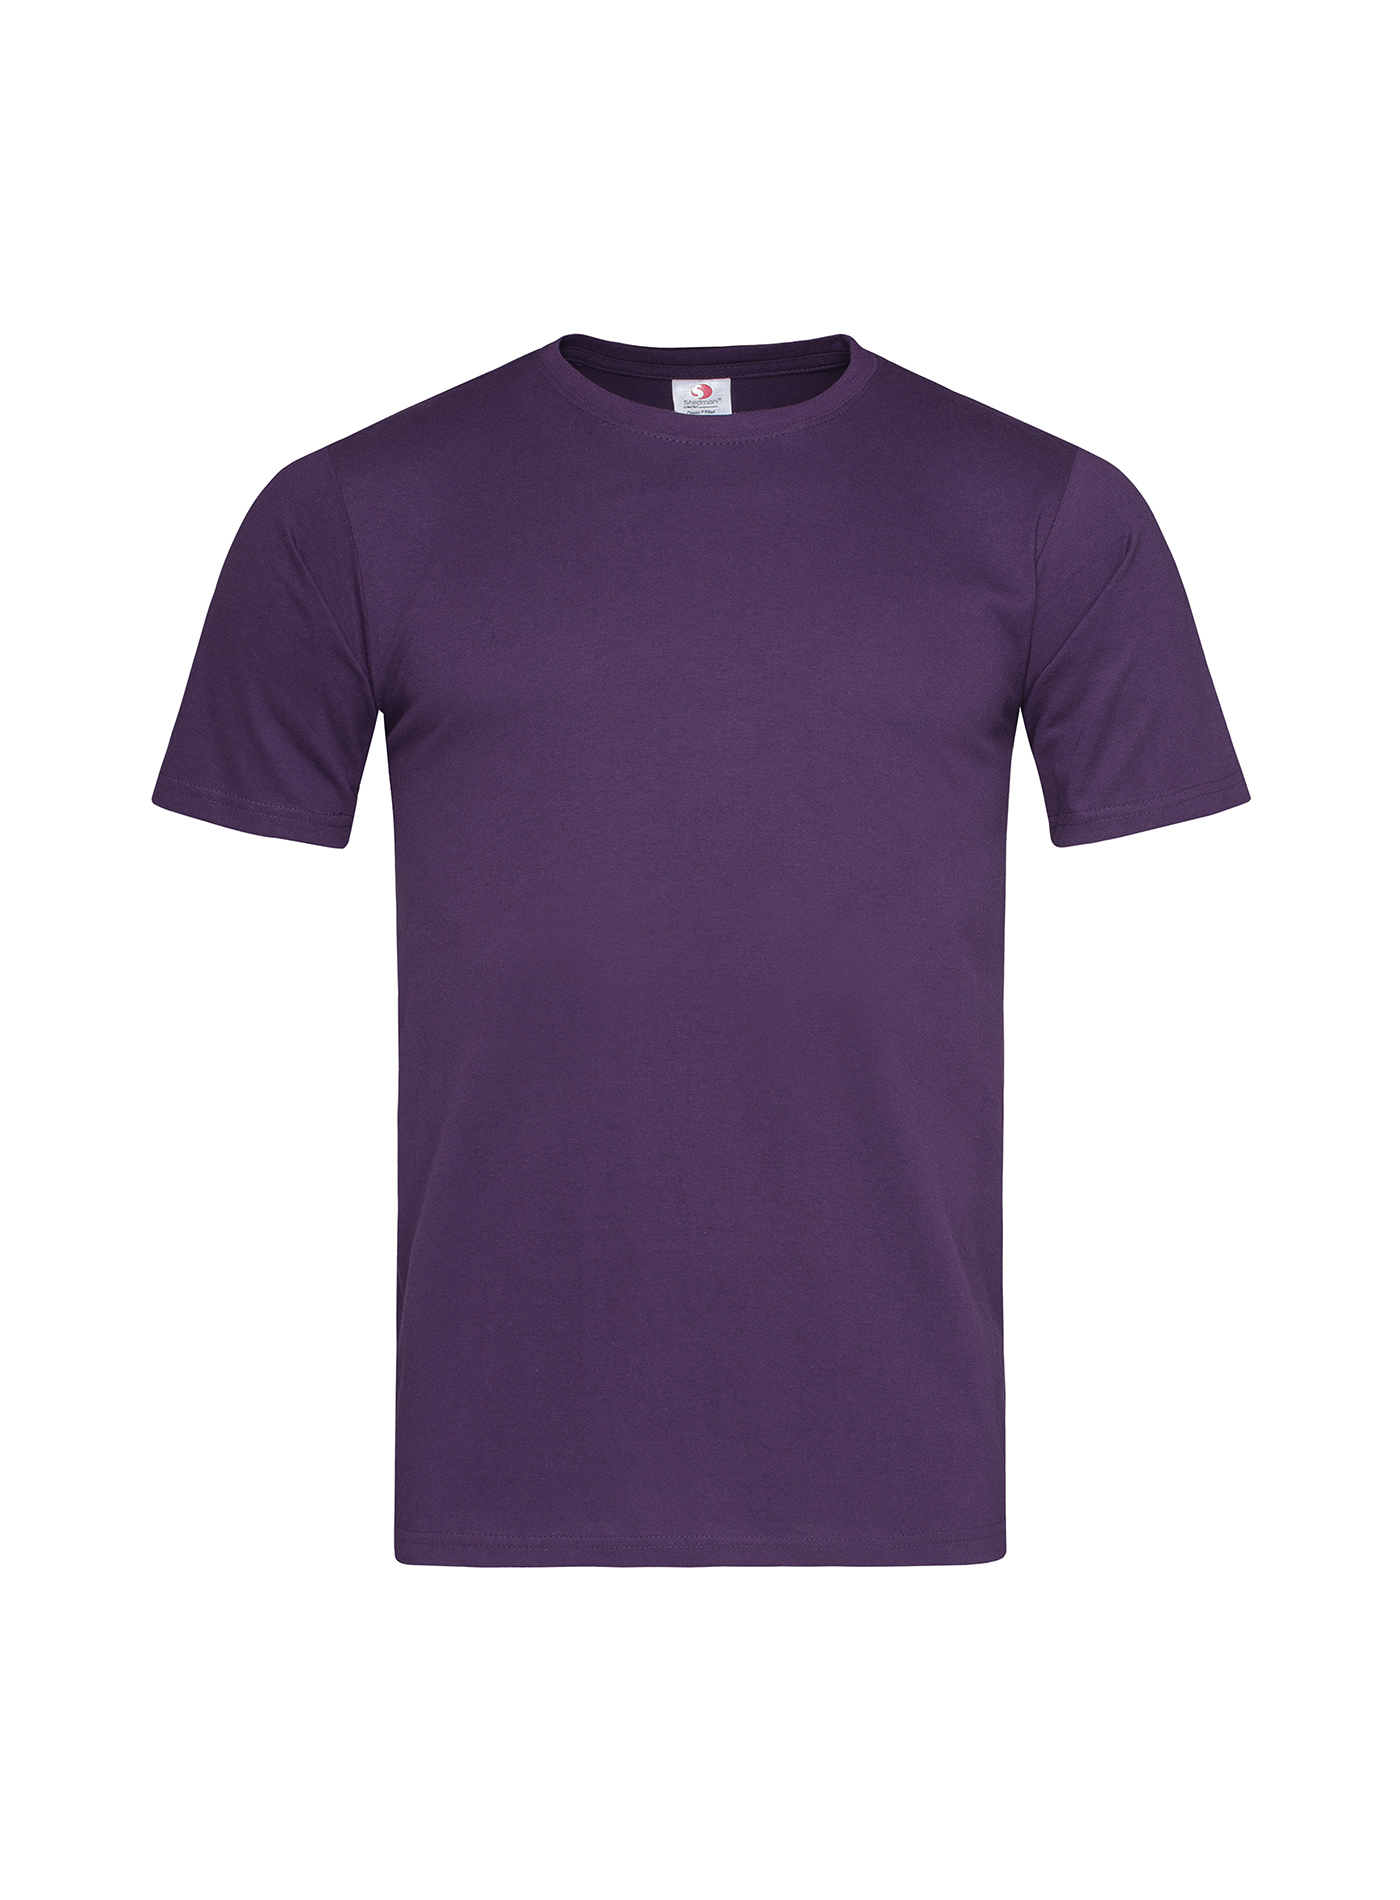 Pánské tričko Fitted - Tmavě fialová XL